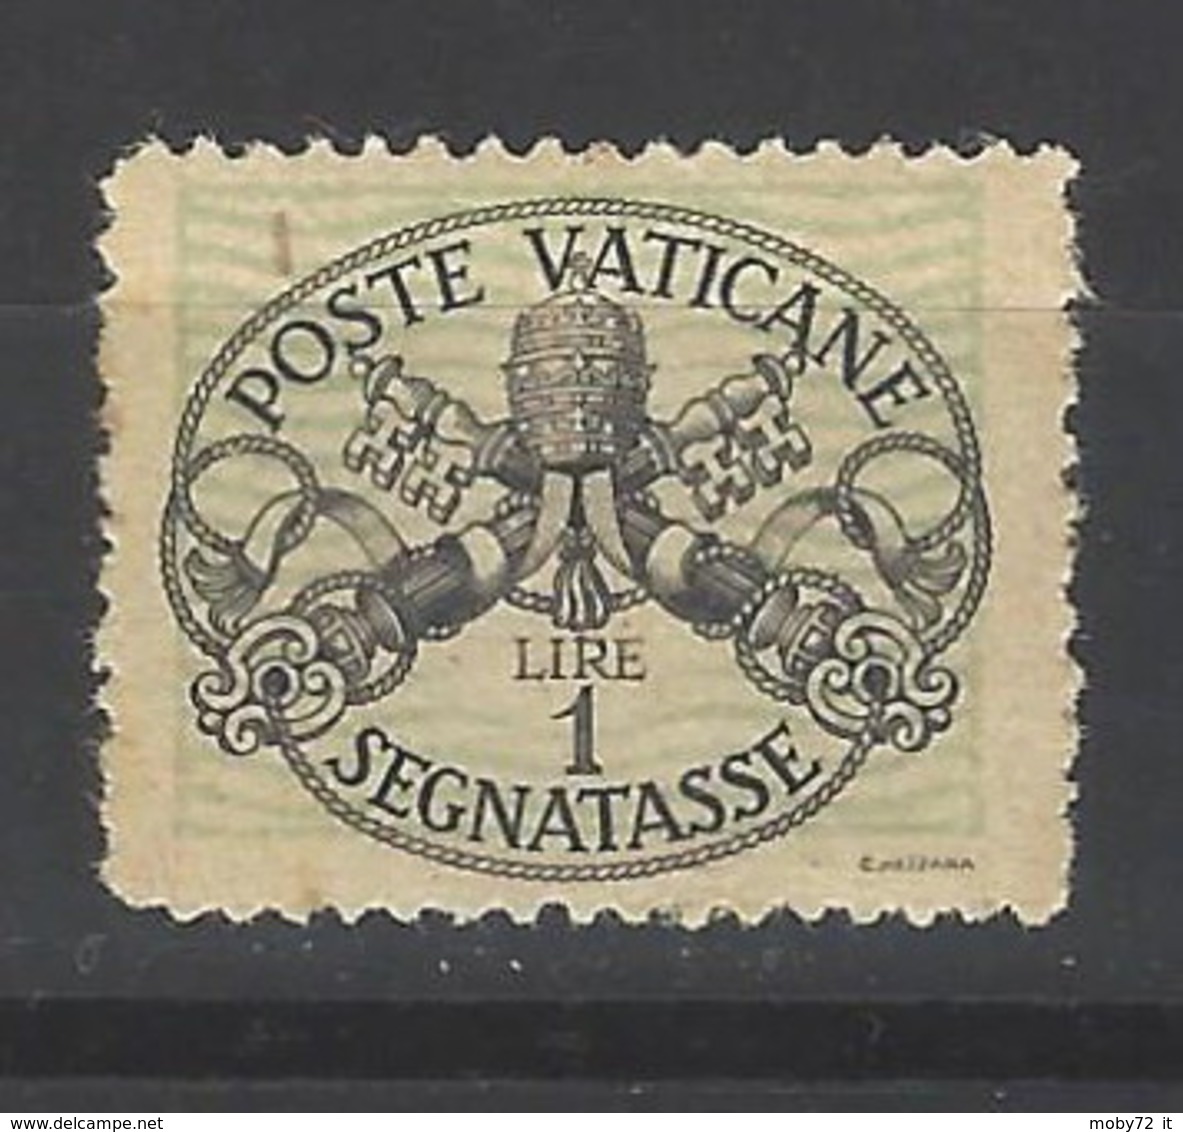 Vaticano - 1946 - Nuovo/new MNH - Segnatasse - Mi N. 10y - Impuestos